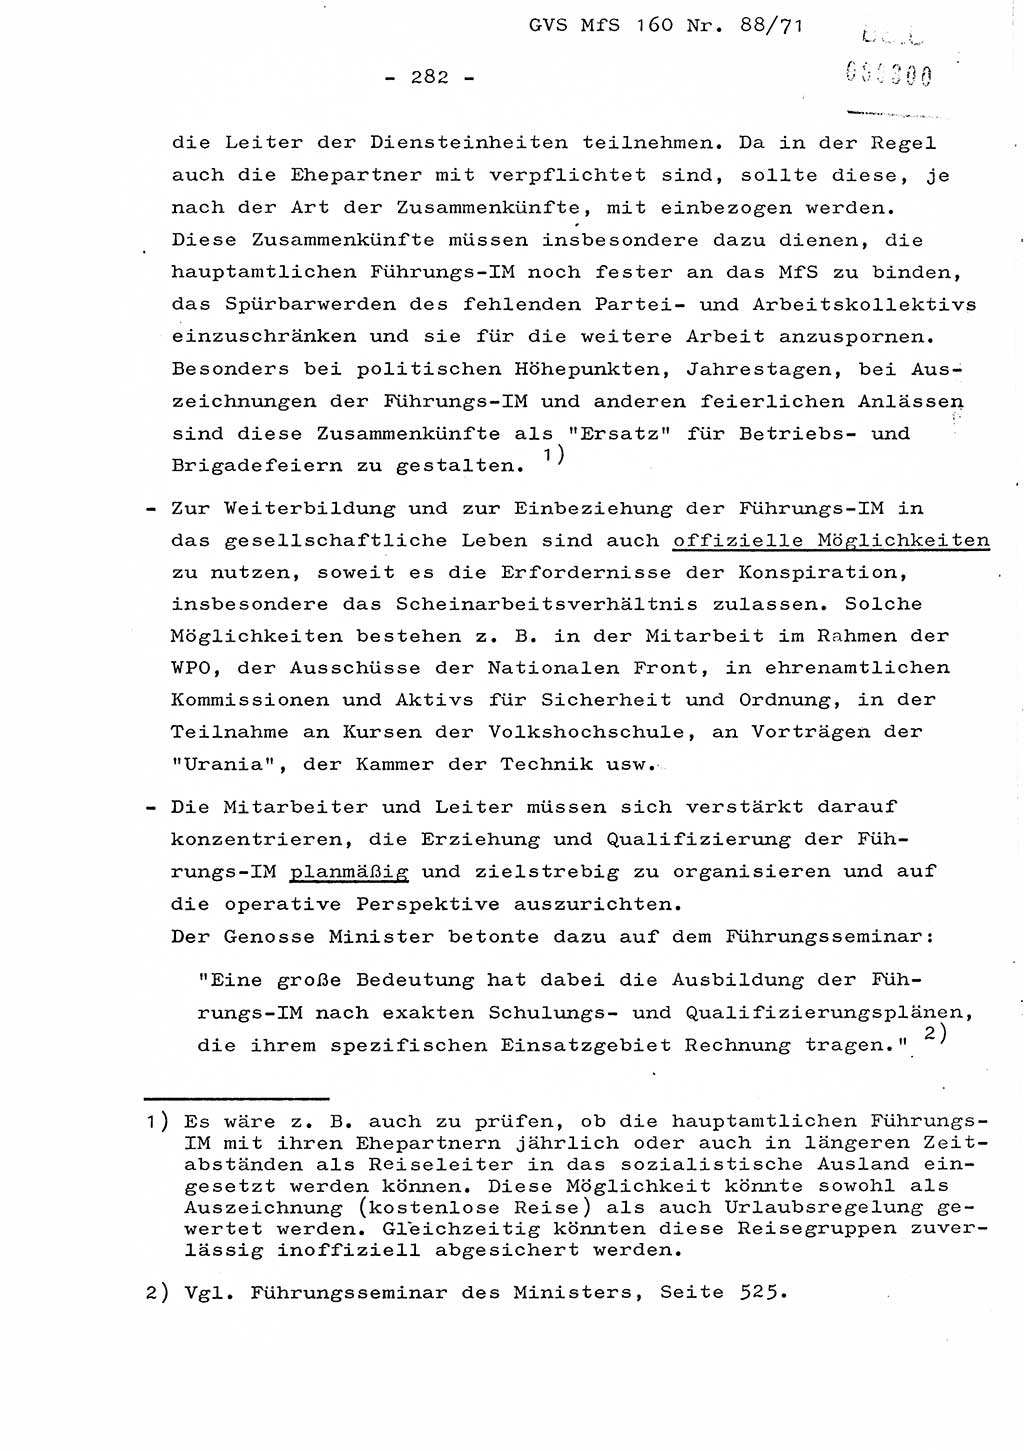 Dissertation Oberstleutnant Josef Schwarz (BV Schwerin), Major Fritz Amm (JHS), Hauptmann Peter Gräßler (JHS), Ministerium für Staatssicherheit (MfS) [Deutsche Demokratische Republik (DDR)], Juristische Hochschule (JHS), Geheime Verschlußsache (GVS) 160-88/71, Potsdam 1972, Seite 282 (Diss. MfS DDR JHS GVS 160-88/71 1972, S. 282)